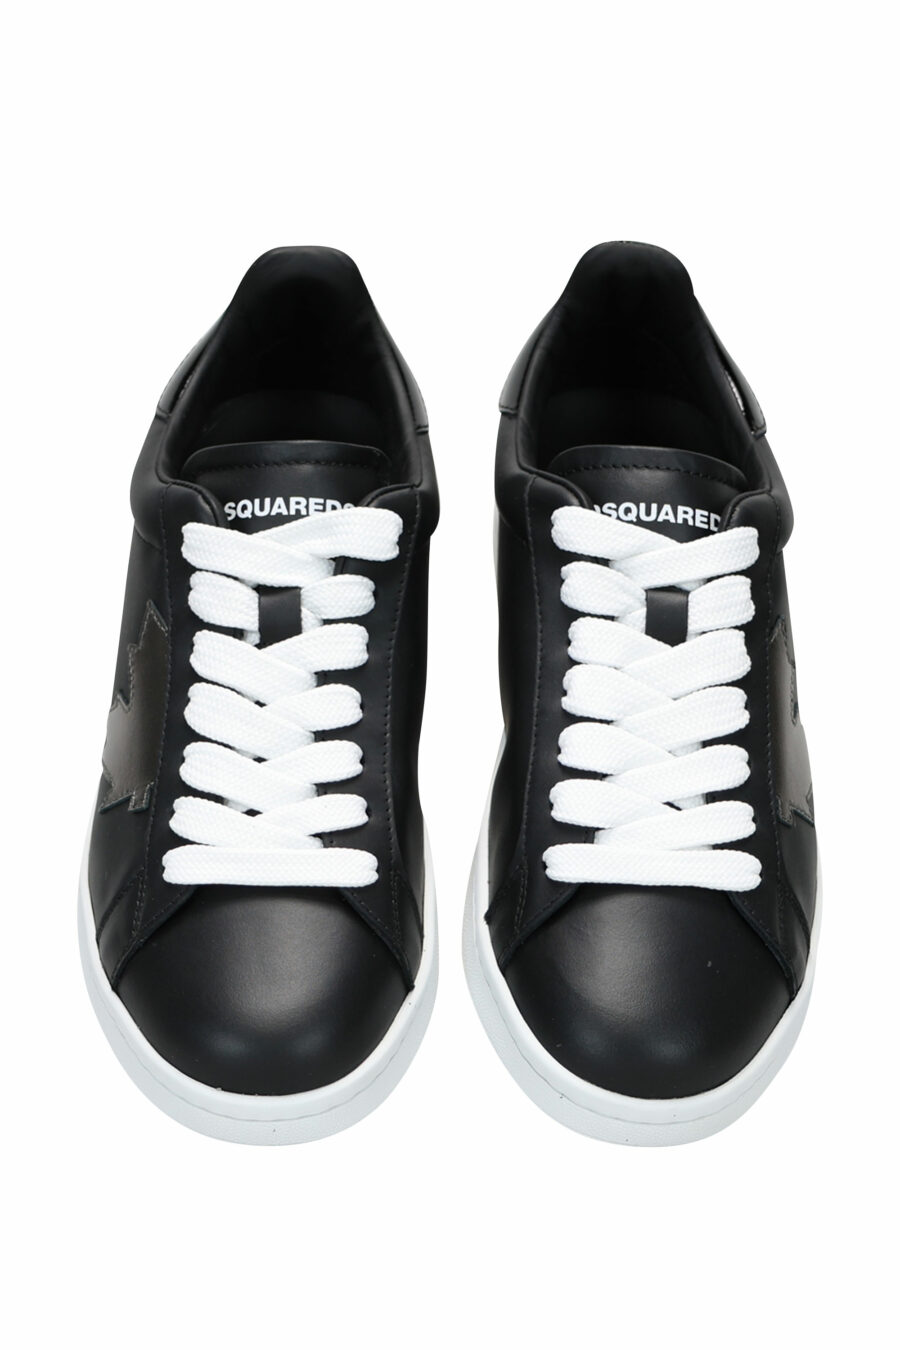 Zapatillas negras con hoja negra y suela blanca - 8055777241127 4